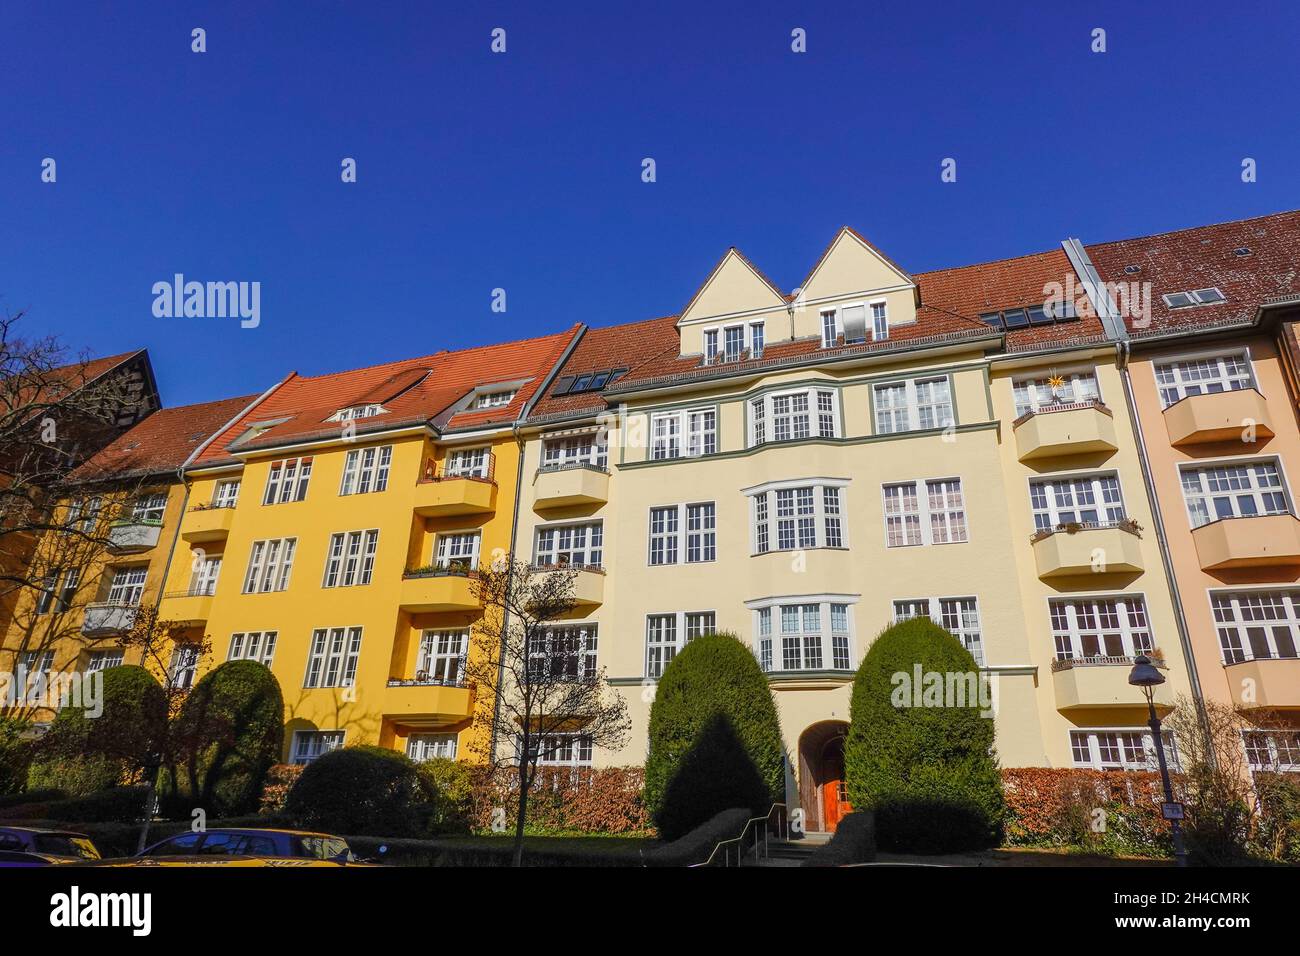 Wohnhäuser, Landauer Straße, Rheingau Viertel, Wilmersdorf, Berlin, Deutschland Stockfoto